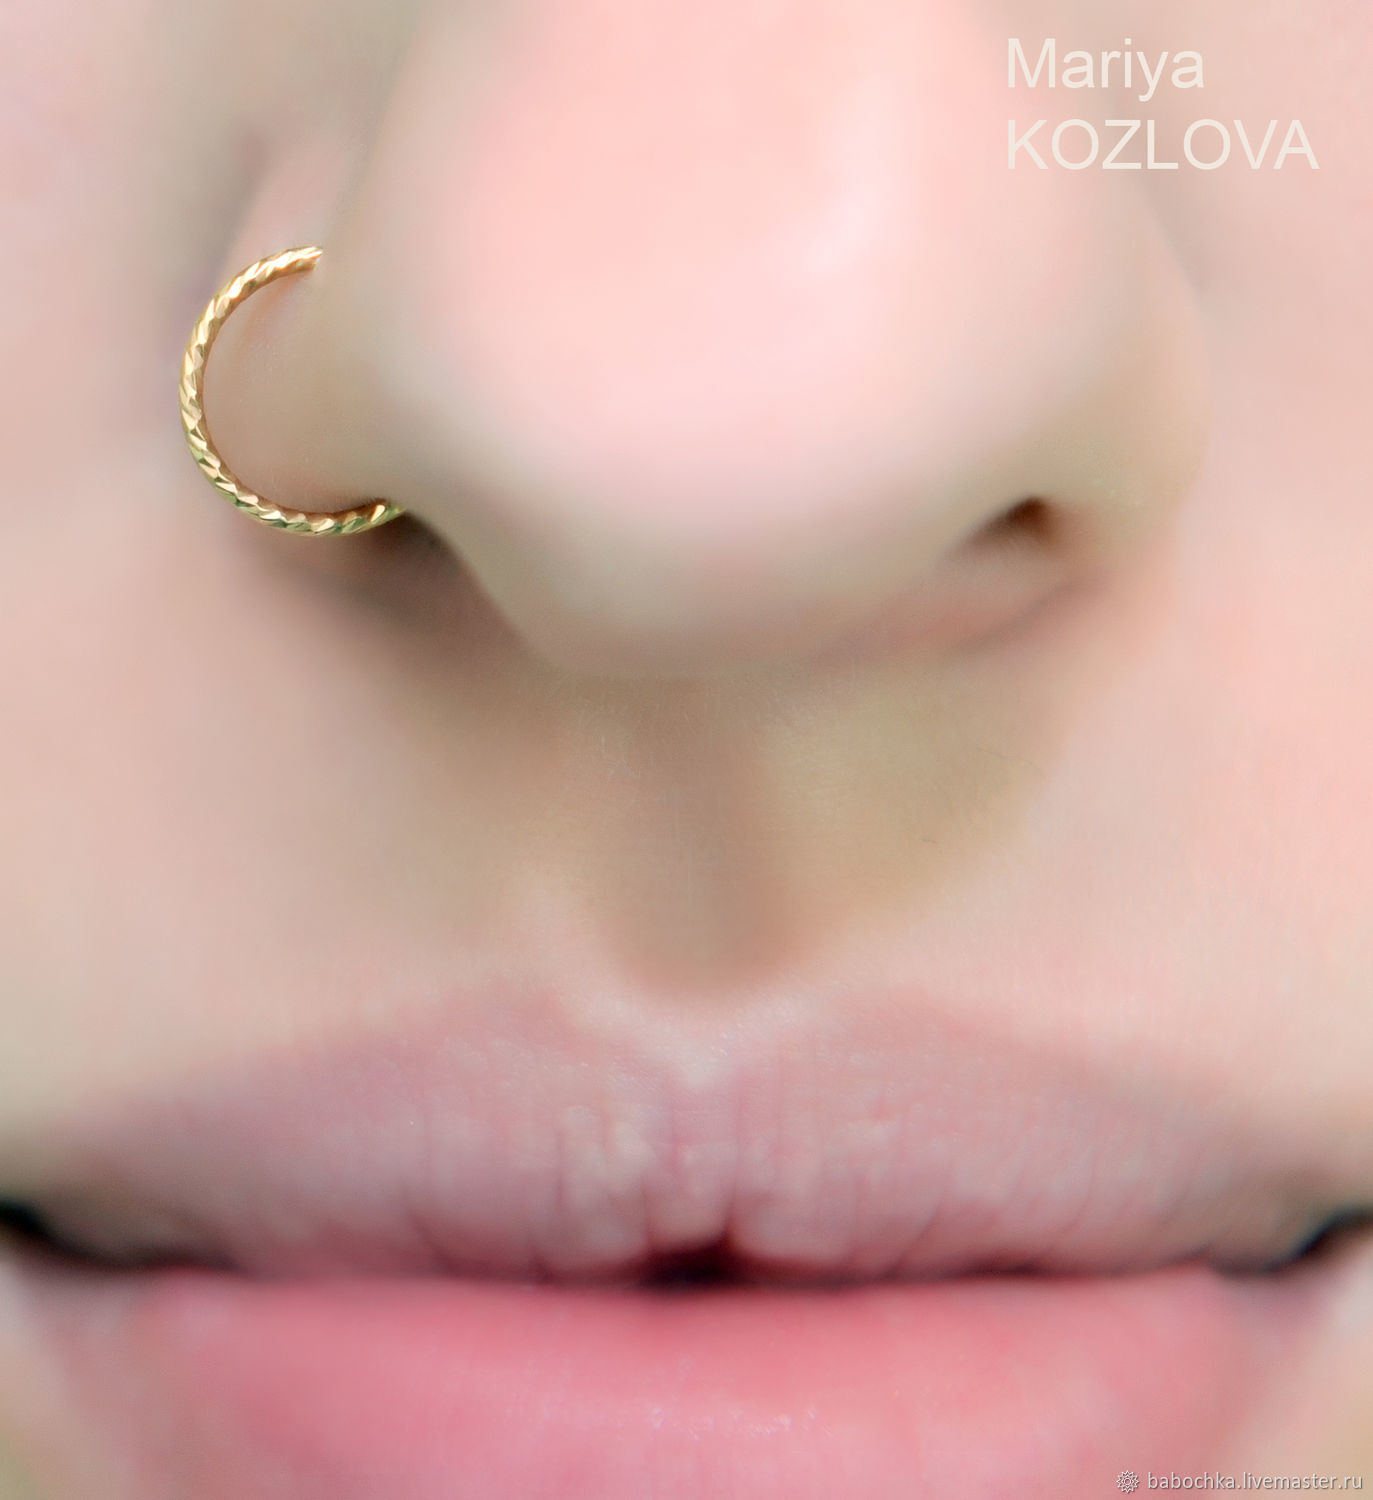 Золотое кольцо в носу